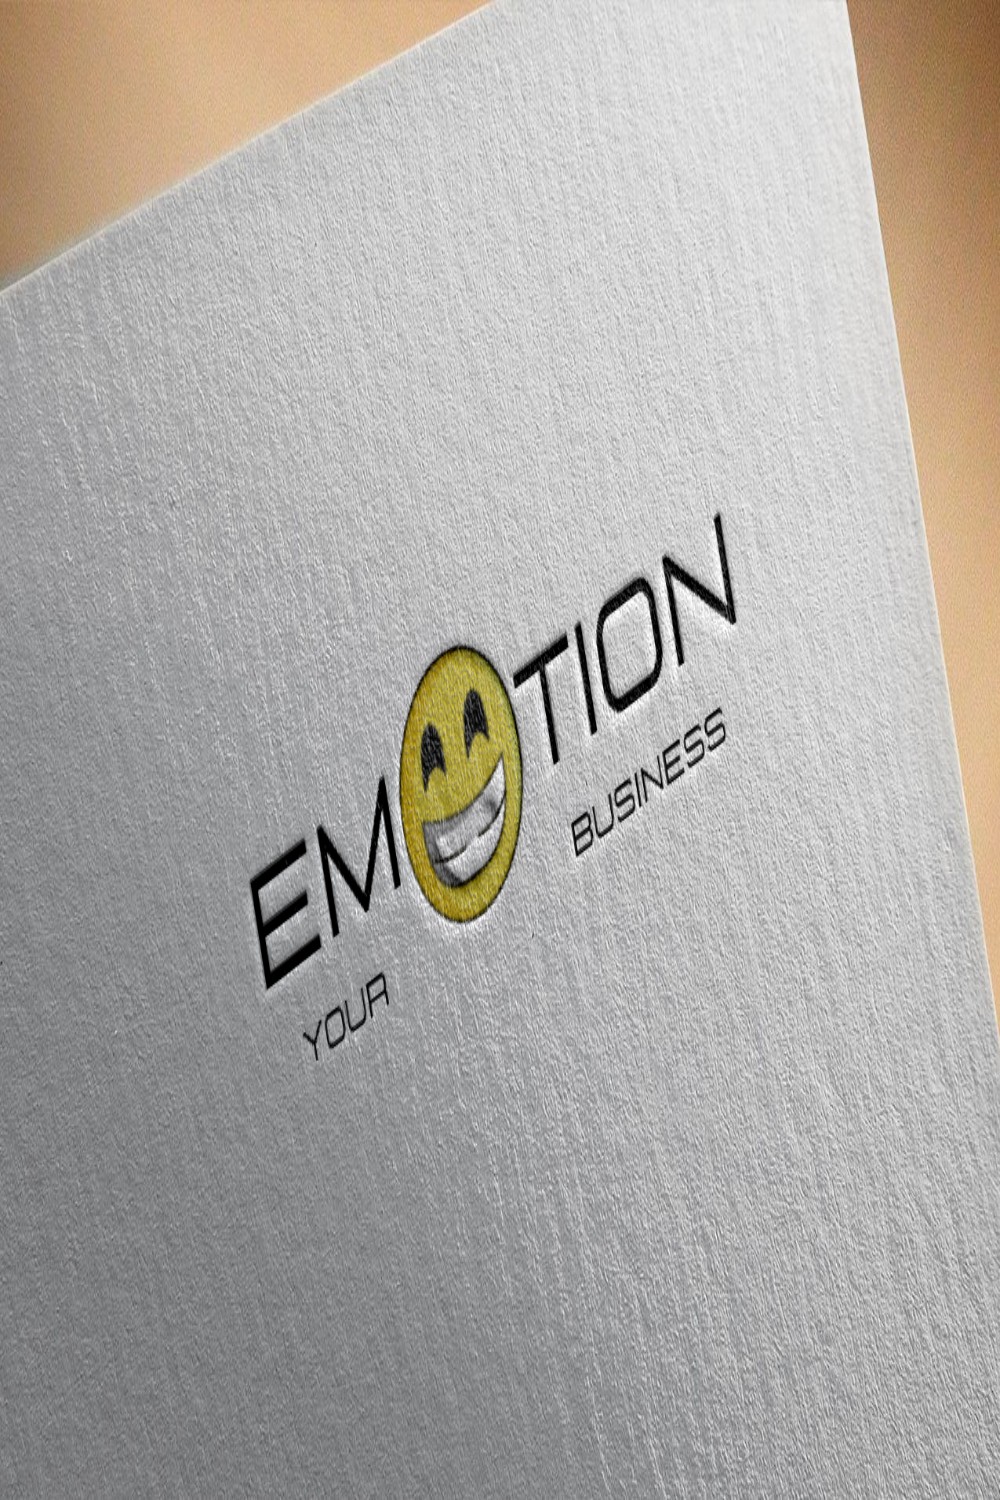 Emotion Logo Design - pinterest image preview.